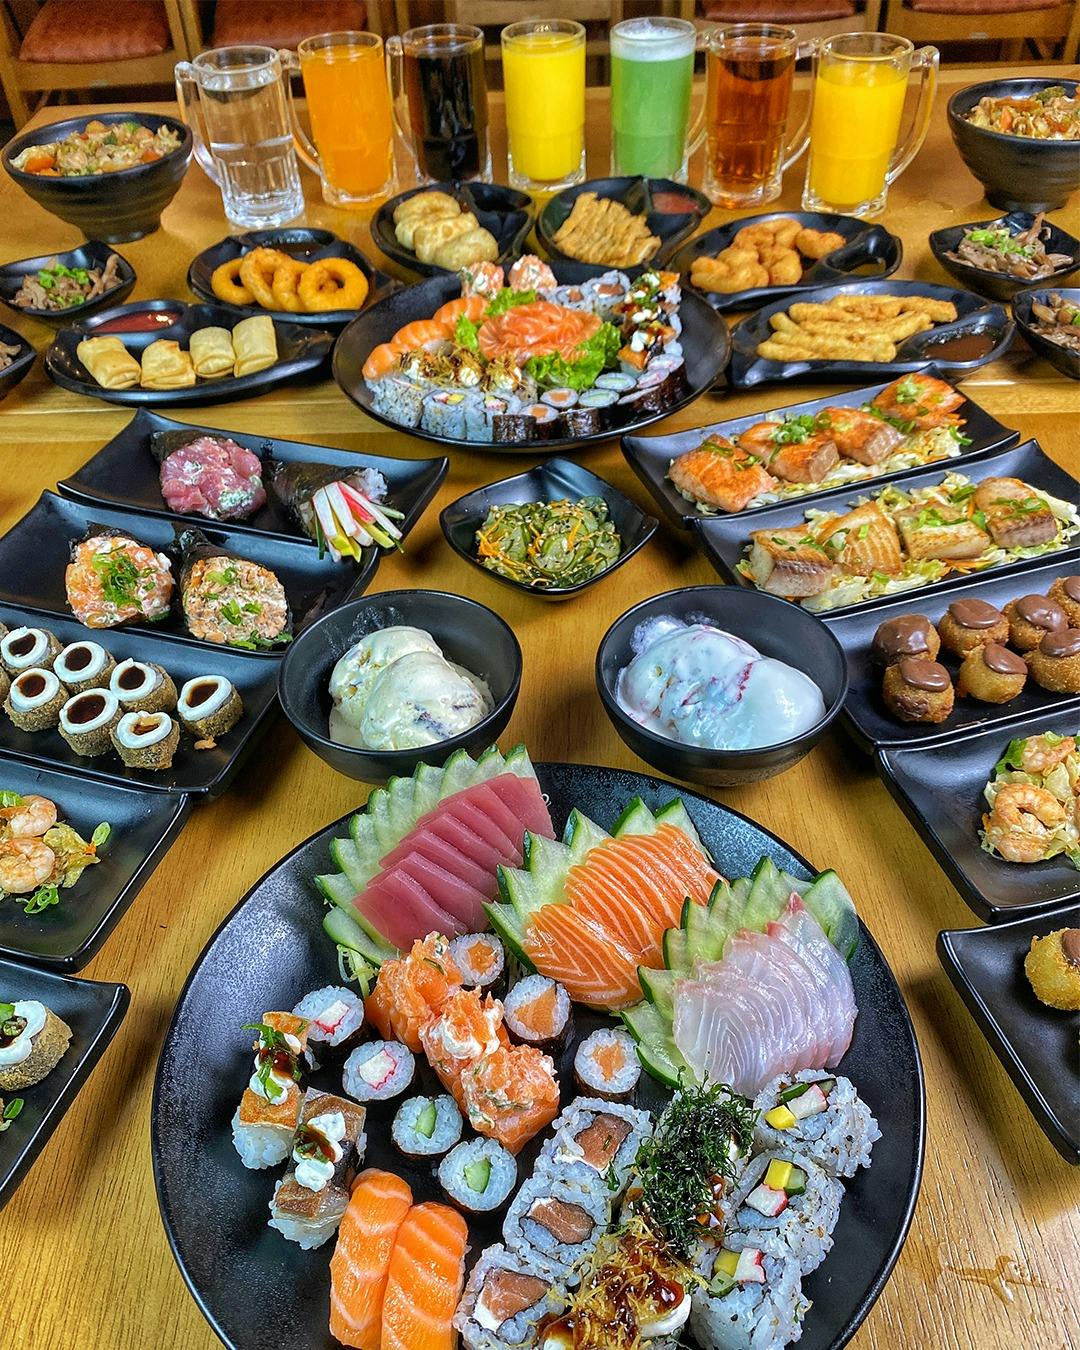 O Nakato Sushi é reconhecido por ser um dos Melhores Rodízios Japoneses de São Paulo. Apresentamos o melhor da culinária japonesa, com opção de rodízio completo e a “la carte”, com um amplo leque de opções em pratos quentes e frios.